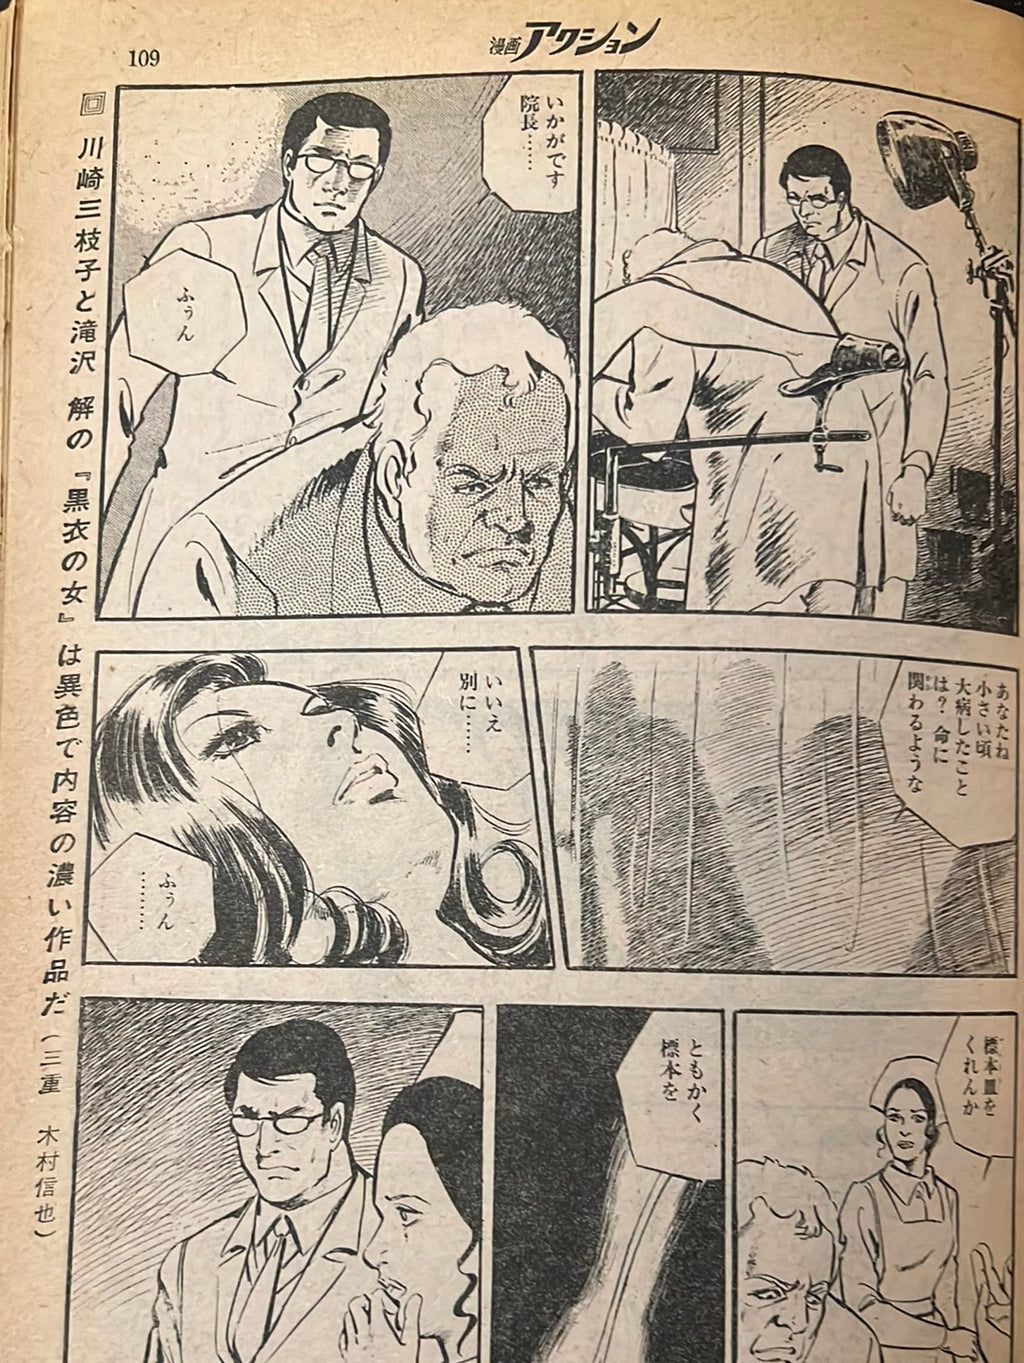 週間漫画アクション Weekly Manga Action 35 SEPT 6 1973 USA SELLER